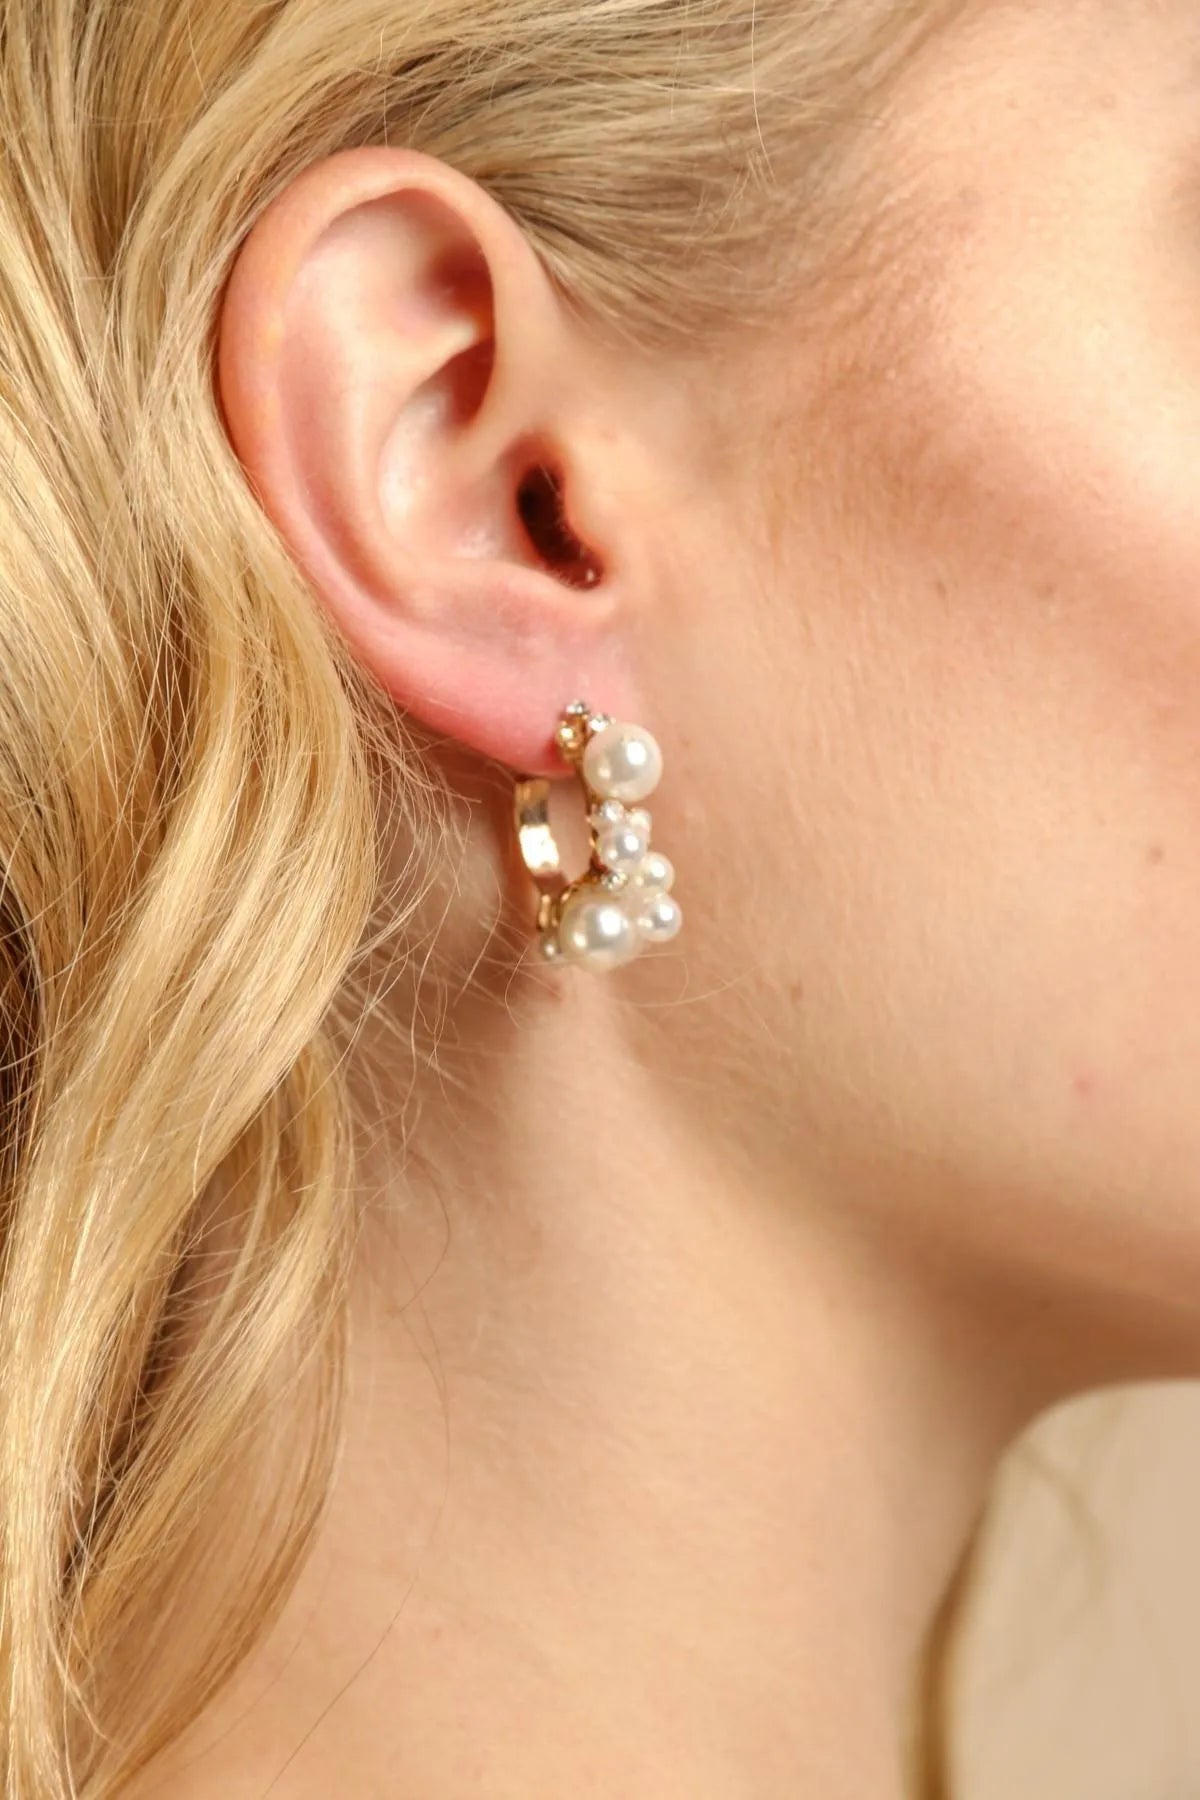 womens fashion accessories, Hoop earrings for women